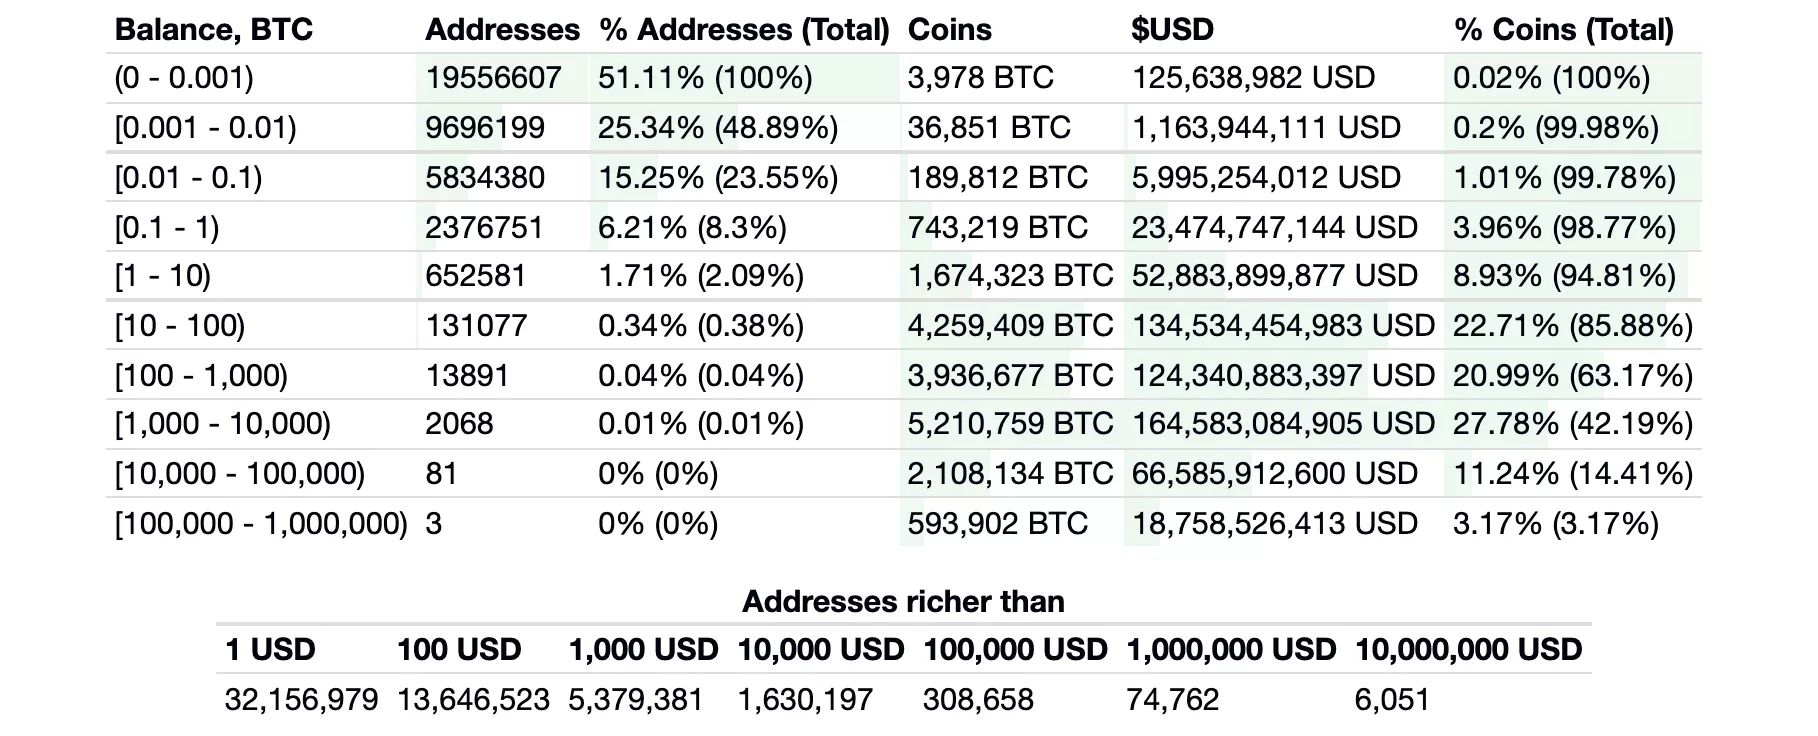 Endereços de Bitcoin mais ricos